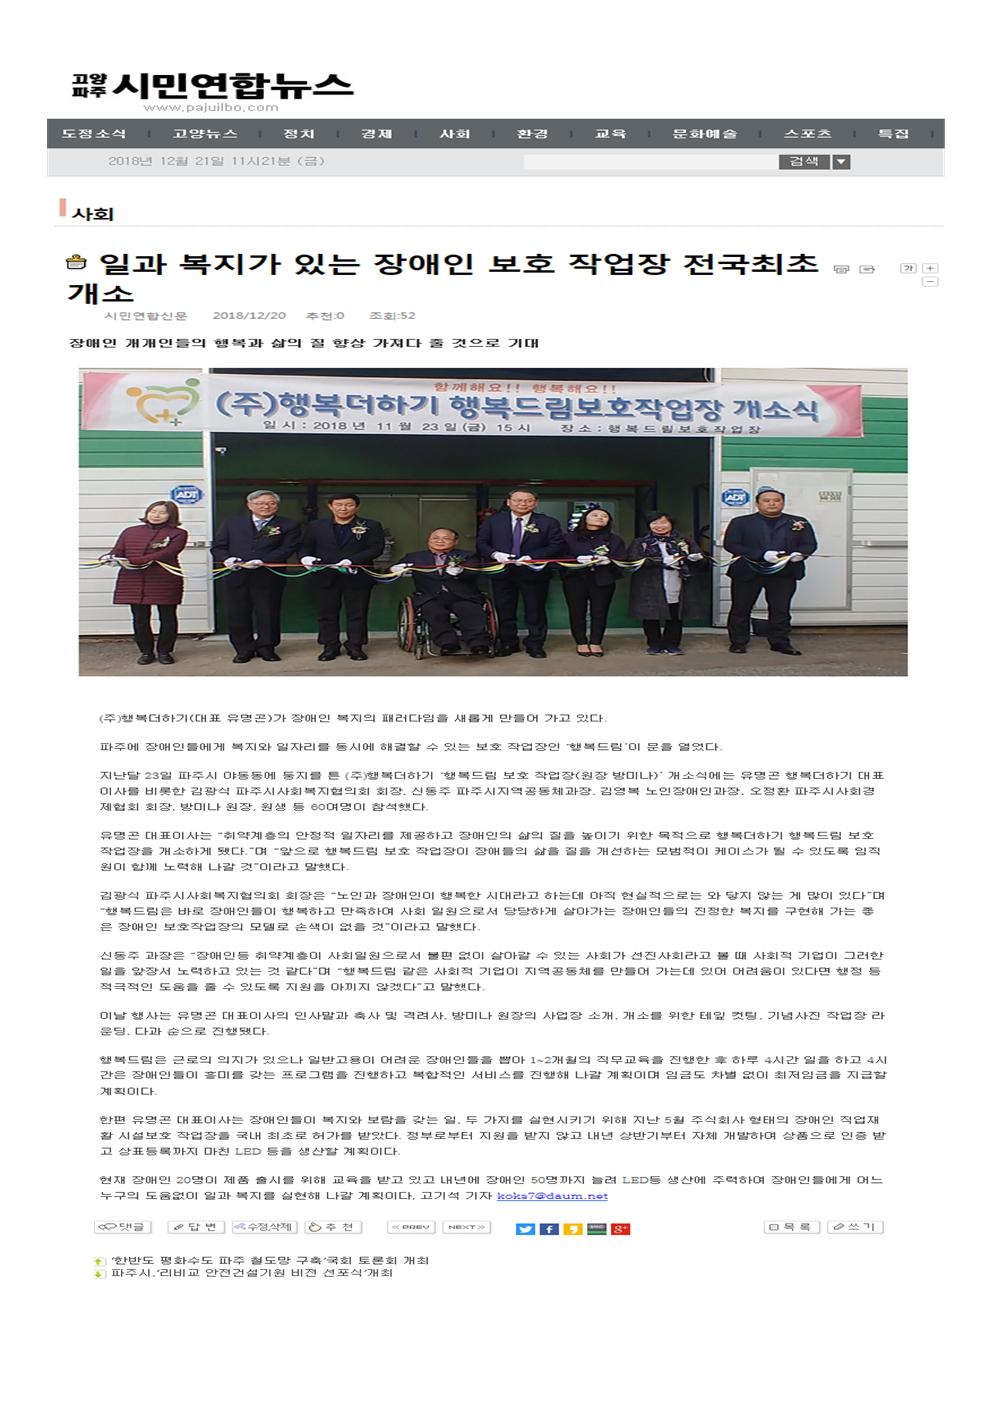 고양.파주 시민연합뉴스 행복드림 보호작업장 개소 (2018. 12. 20 게재)